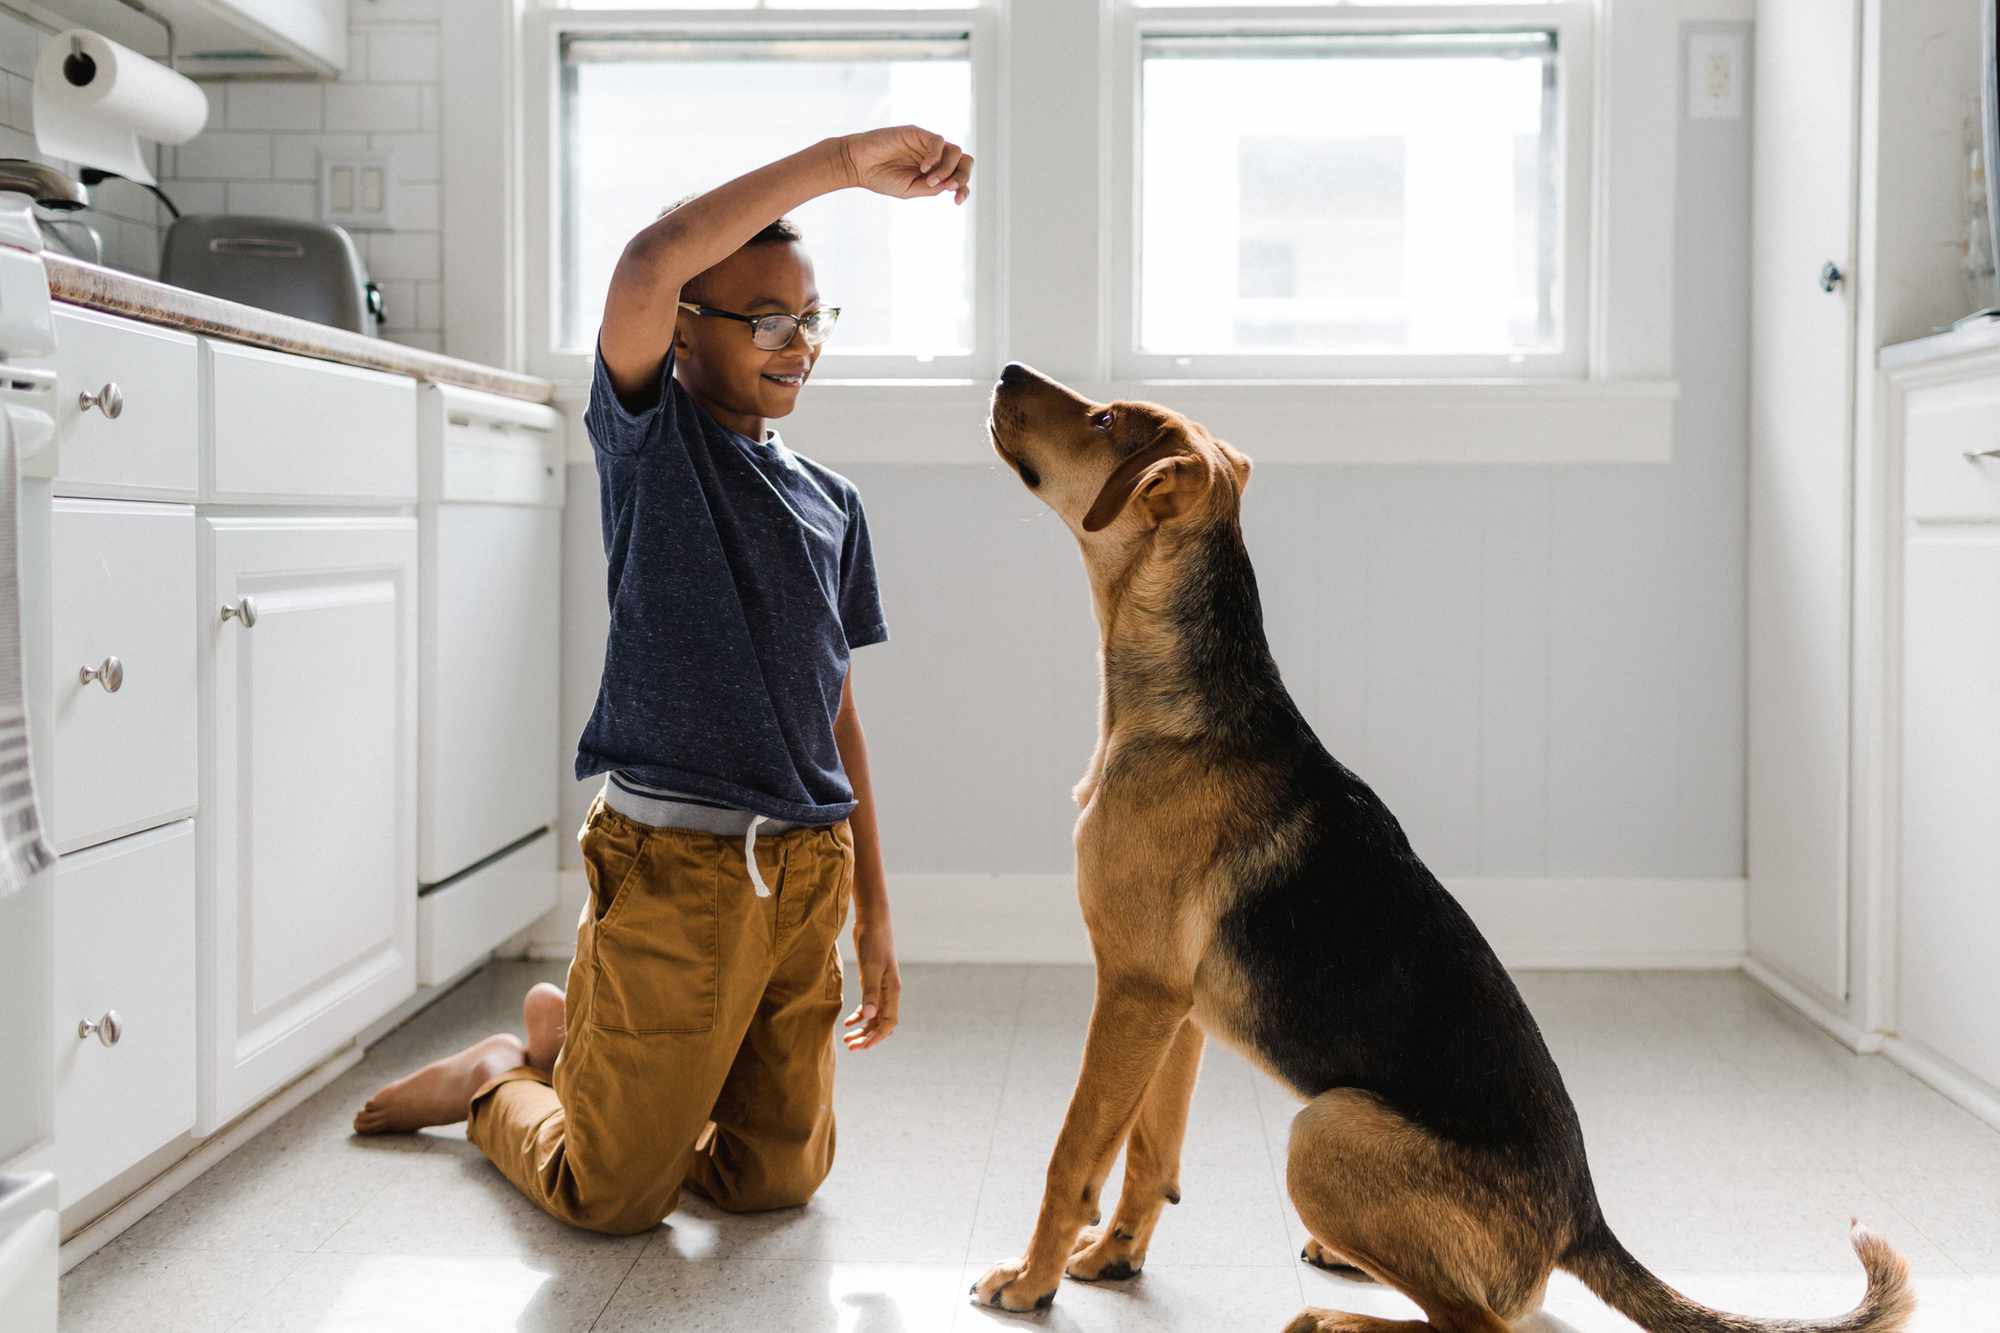 Poika kouluttaa koiraansa herkulla kirkkaasti valaistussa keittiössä